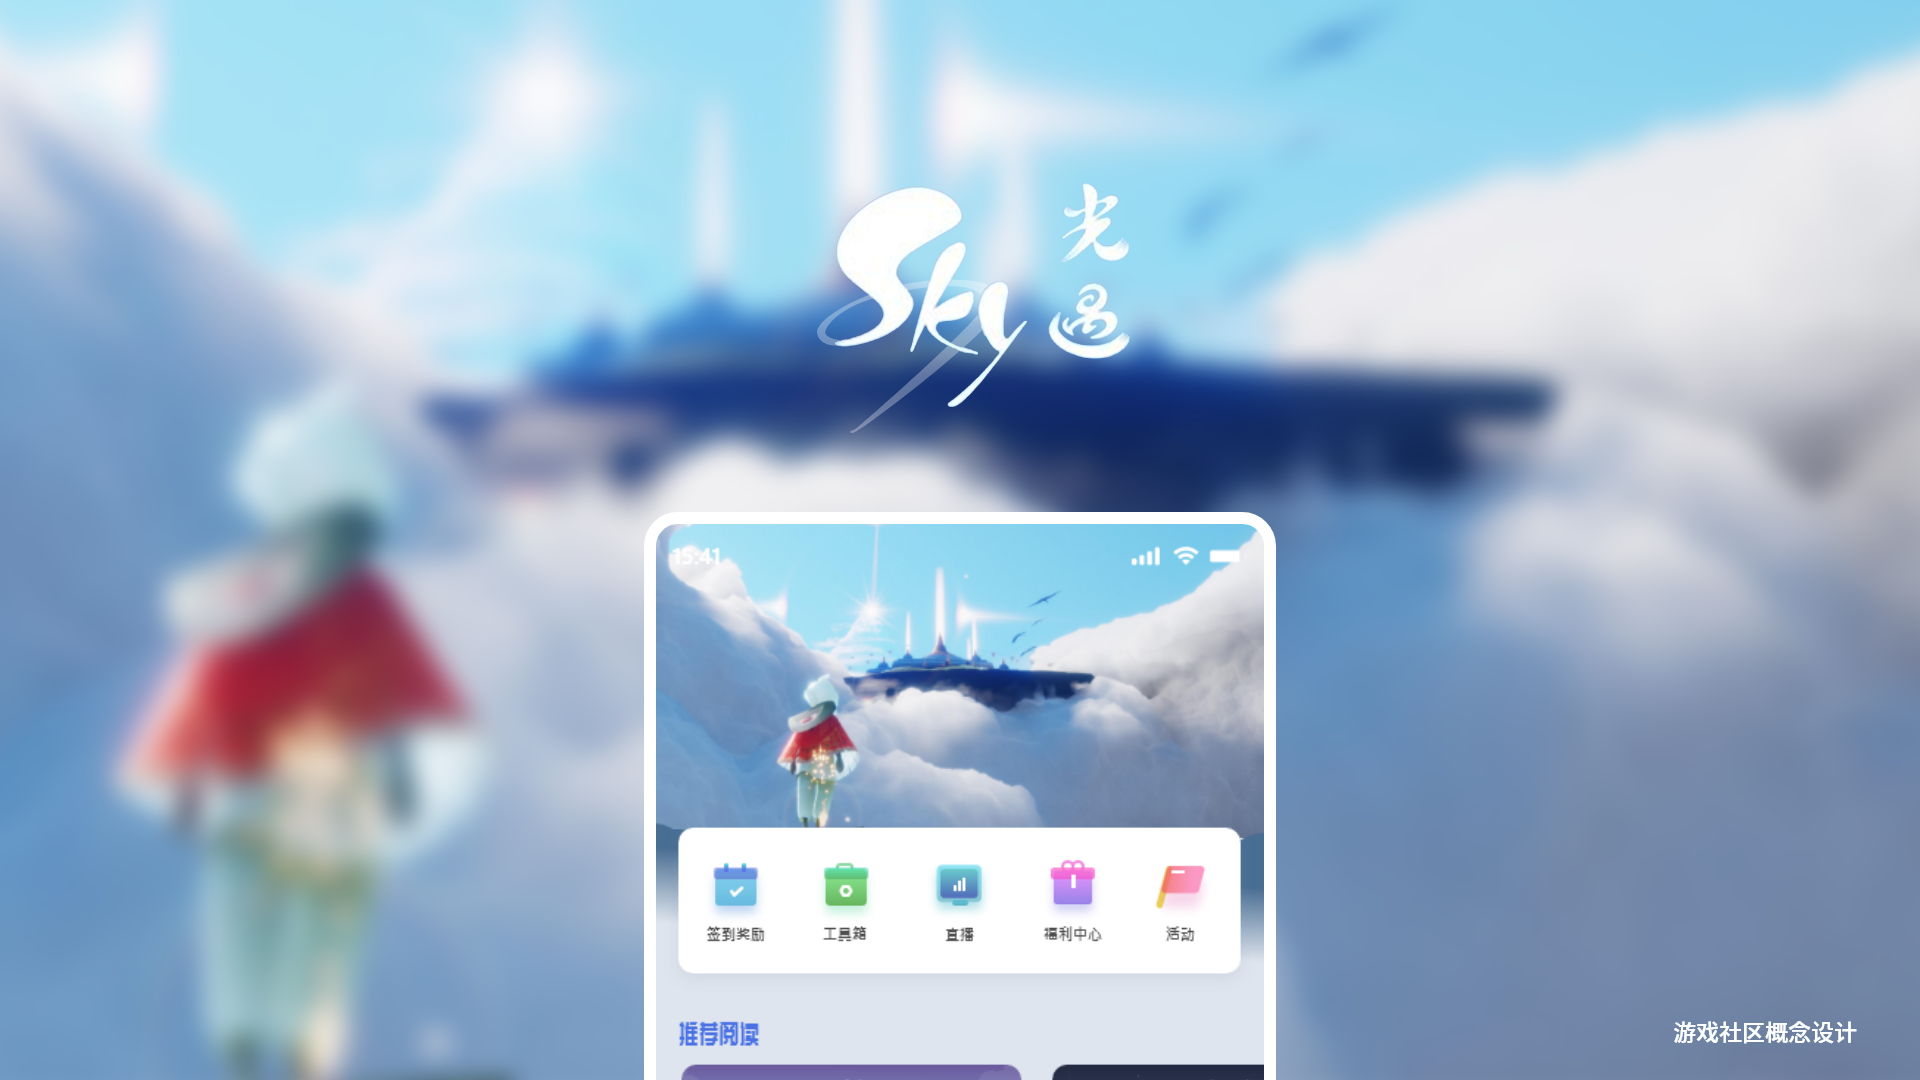 网易校招笔试作品-"sky光遇"游戏社区界面设计|ui|app